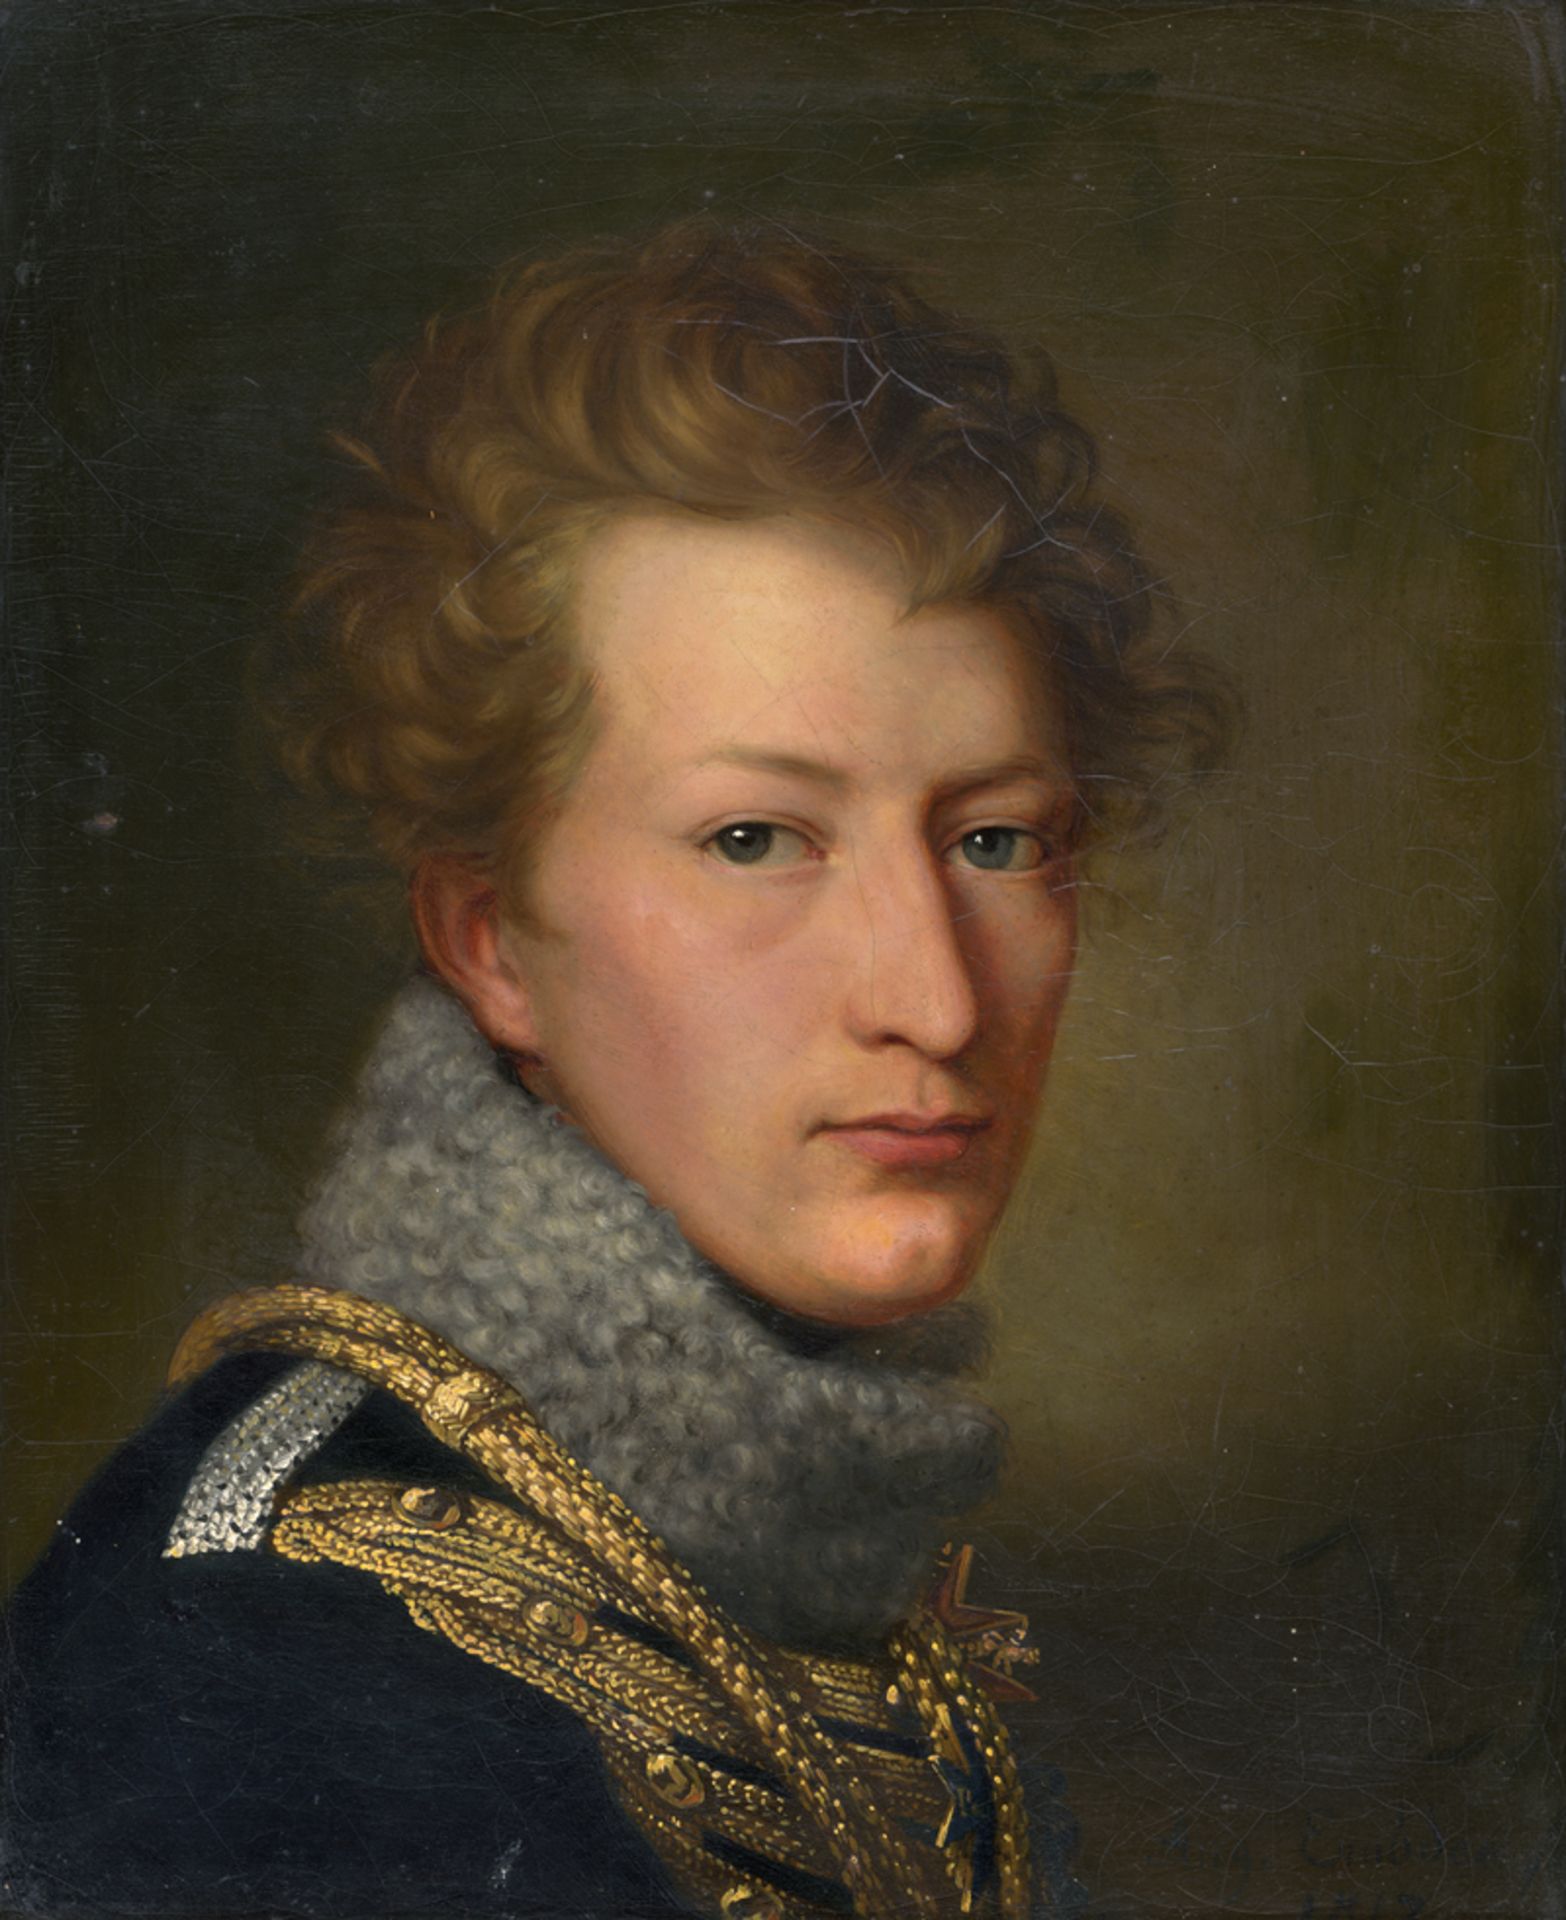 Embde, August von der: Bildnis eines jungen Offiziers mit Pelzkragen und Pour-l...